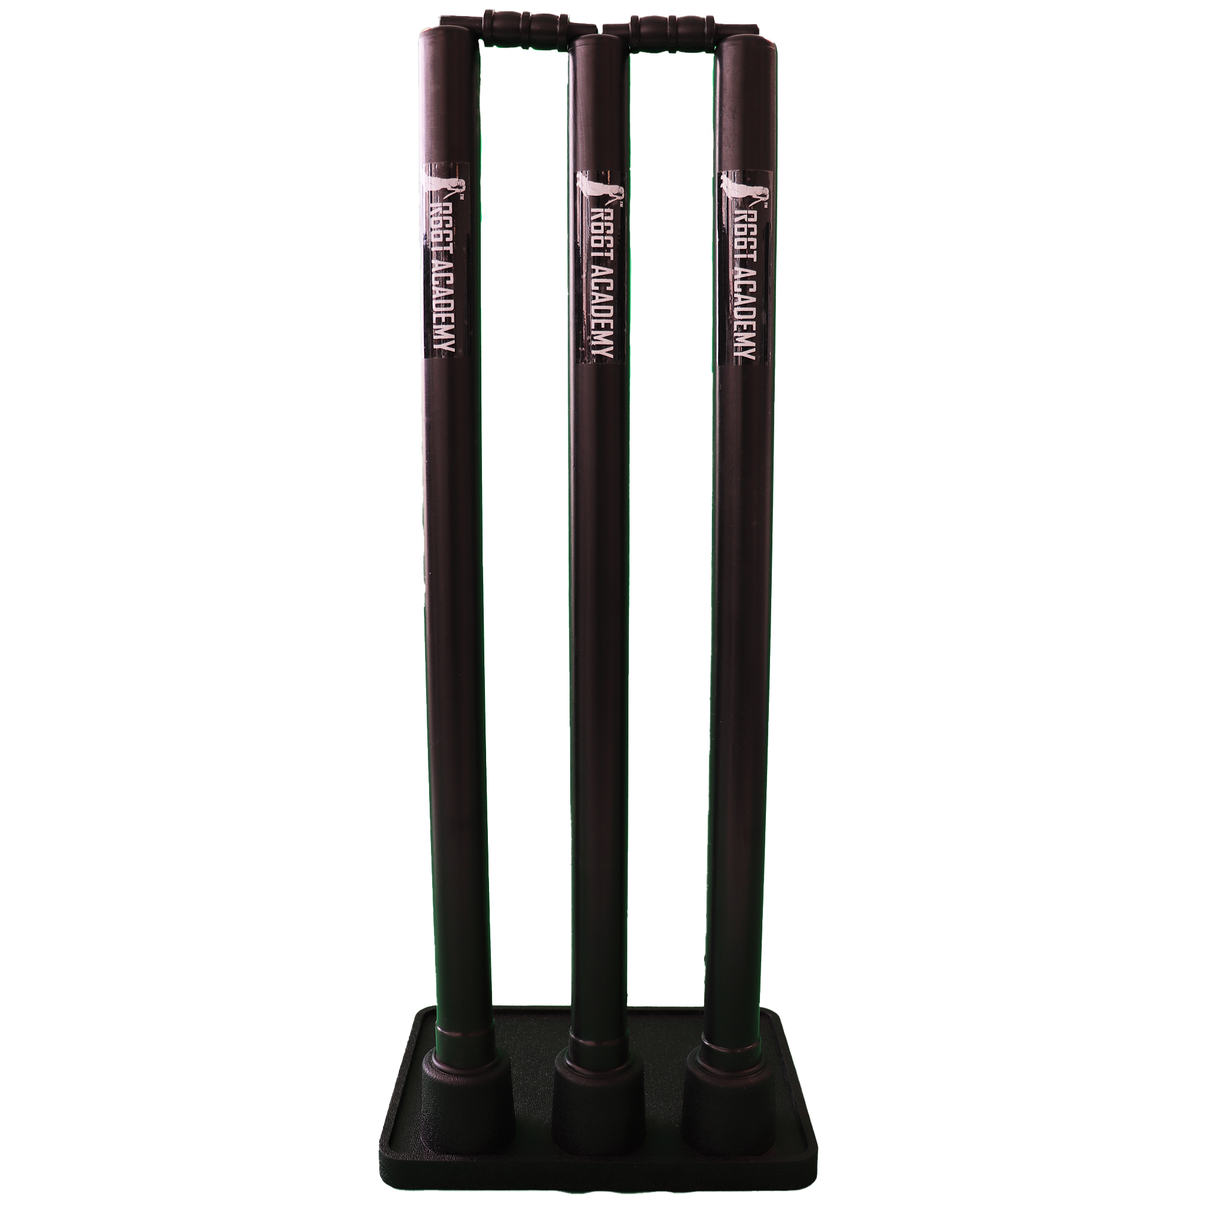 R66T Academy Stumps - Rubber Cricket Stumps (black)